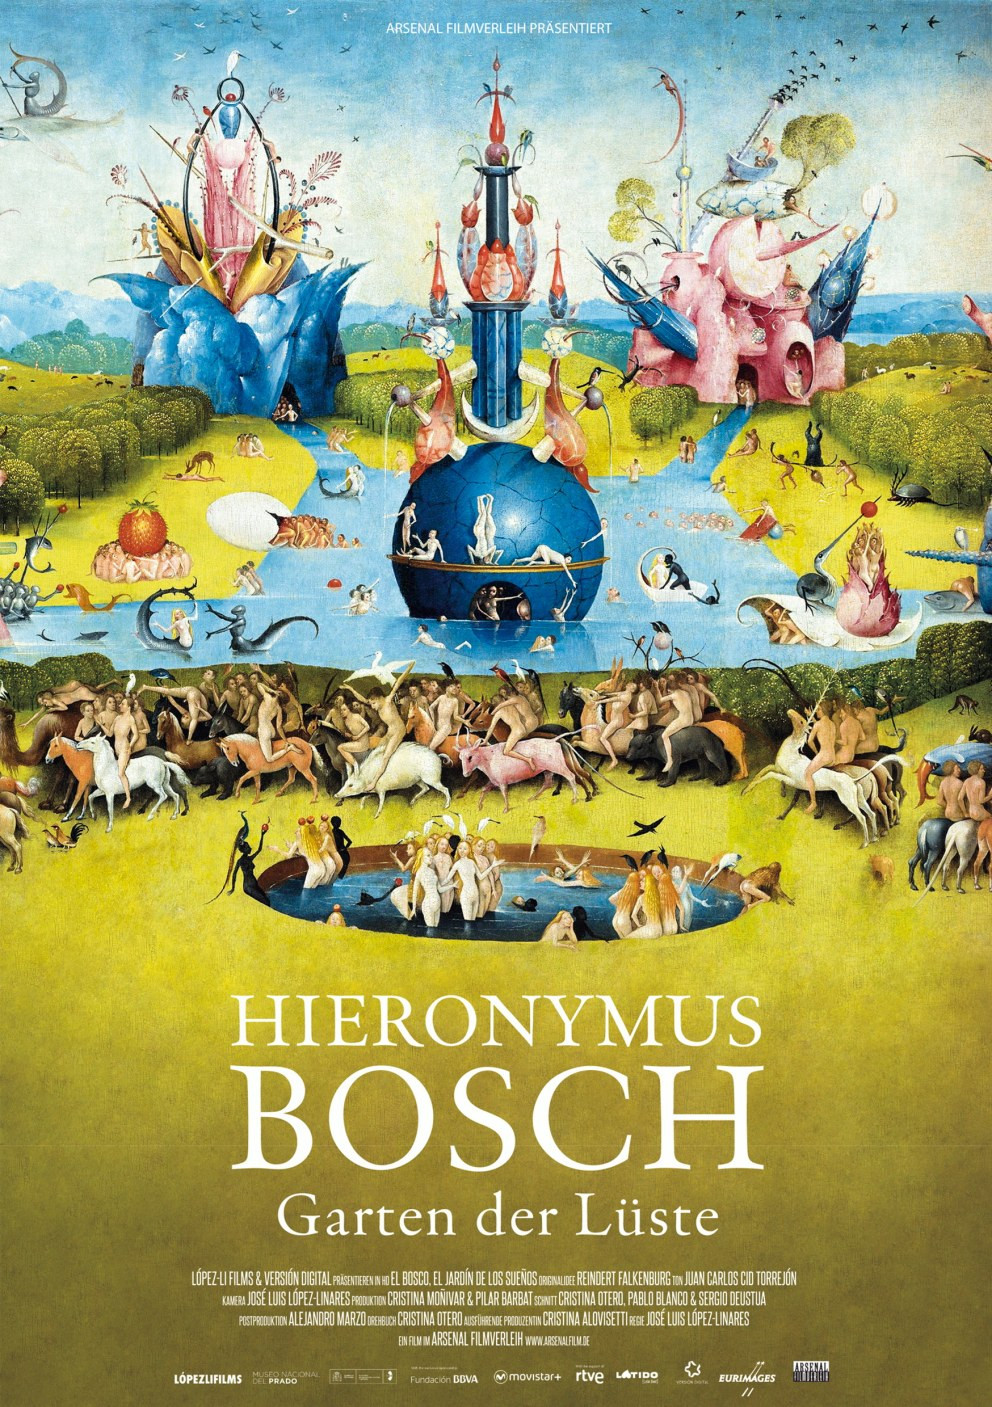 Bosch Garten
 Hieronymus Bosch Garten der Lüste